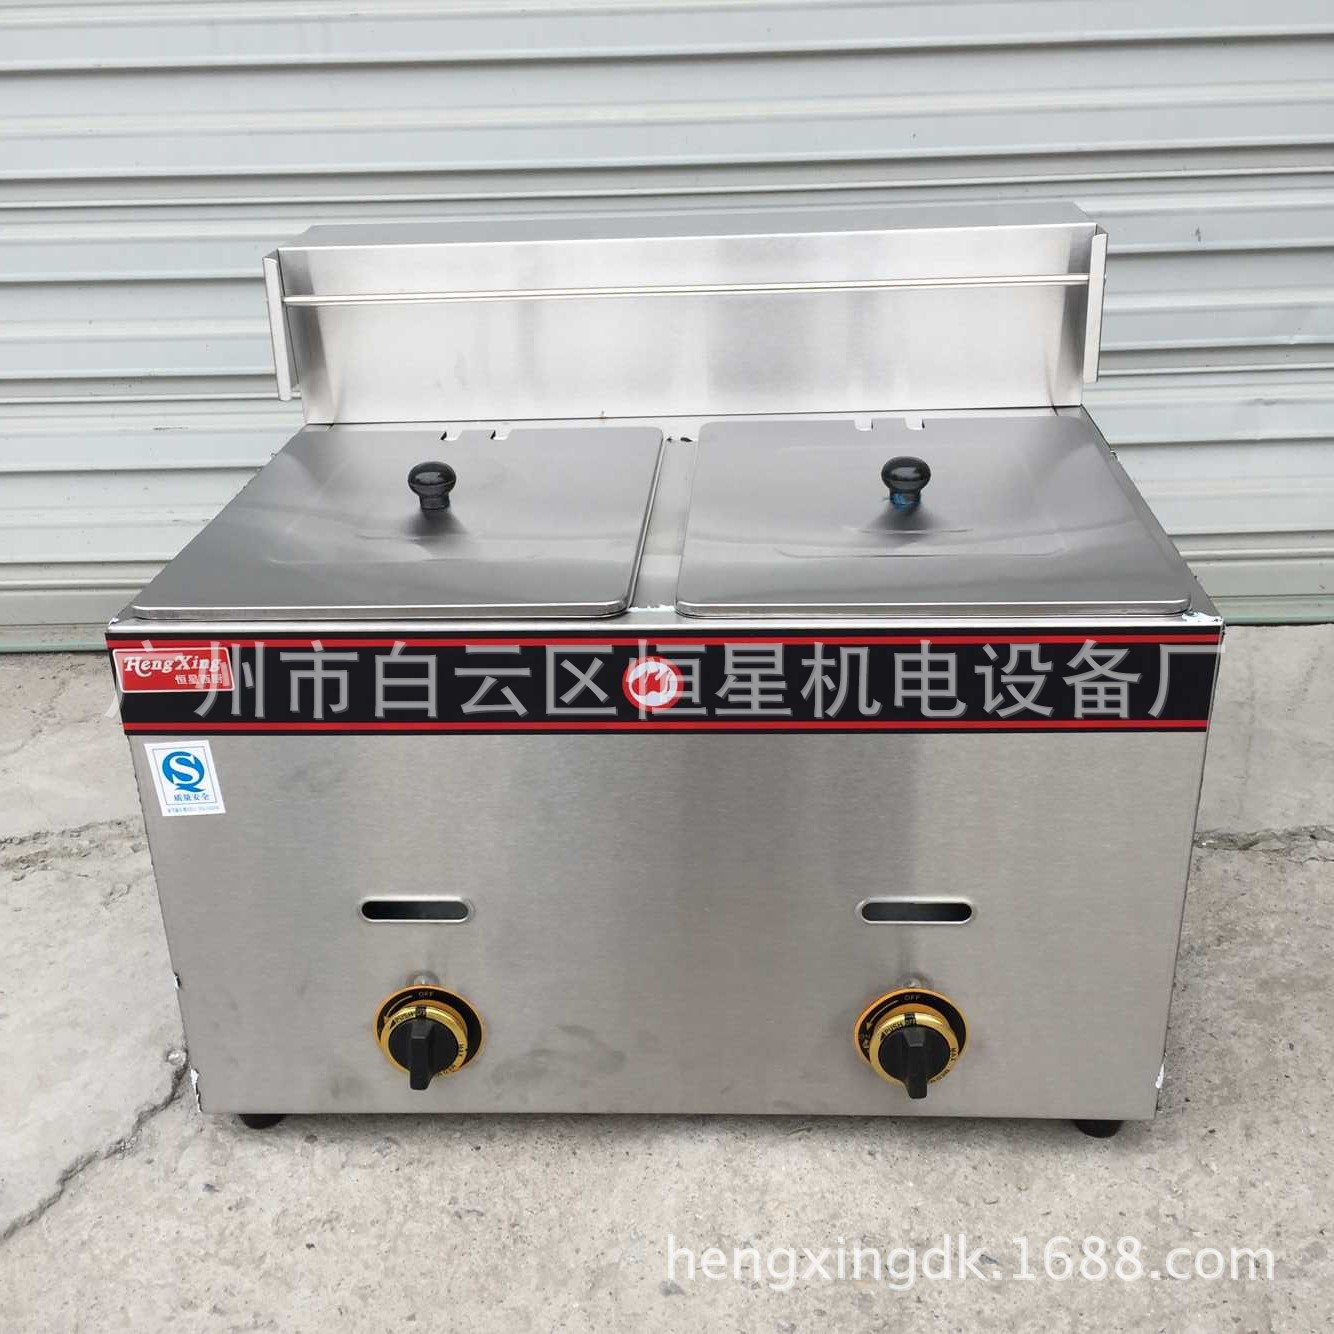 HX-72双缸气炸炉 商用炸锅 特价炸炉 炸鸡腿 薯条 臭豆腐厨具设备